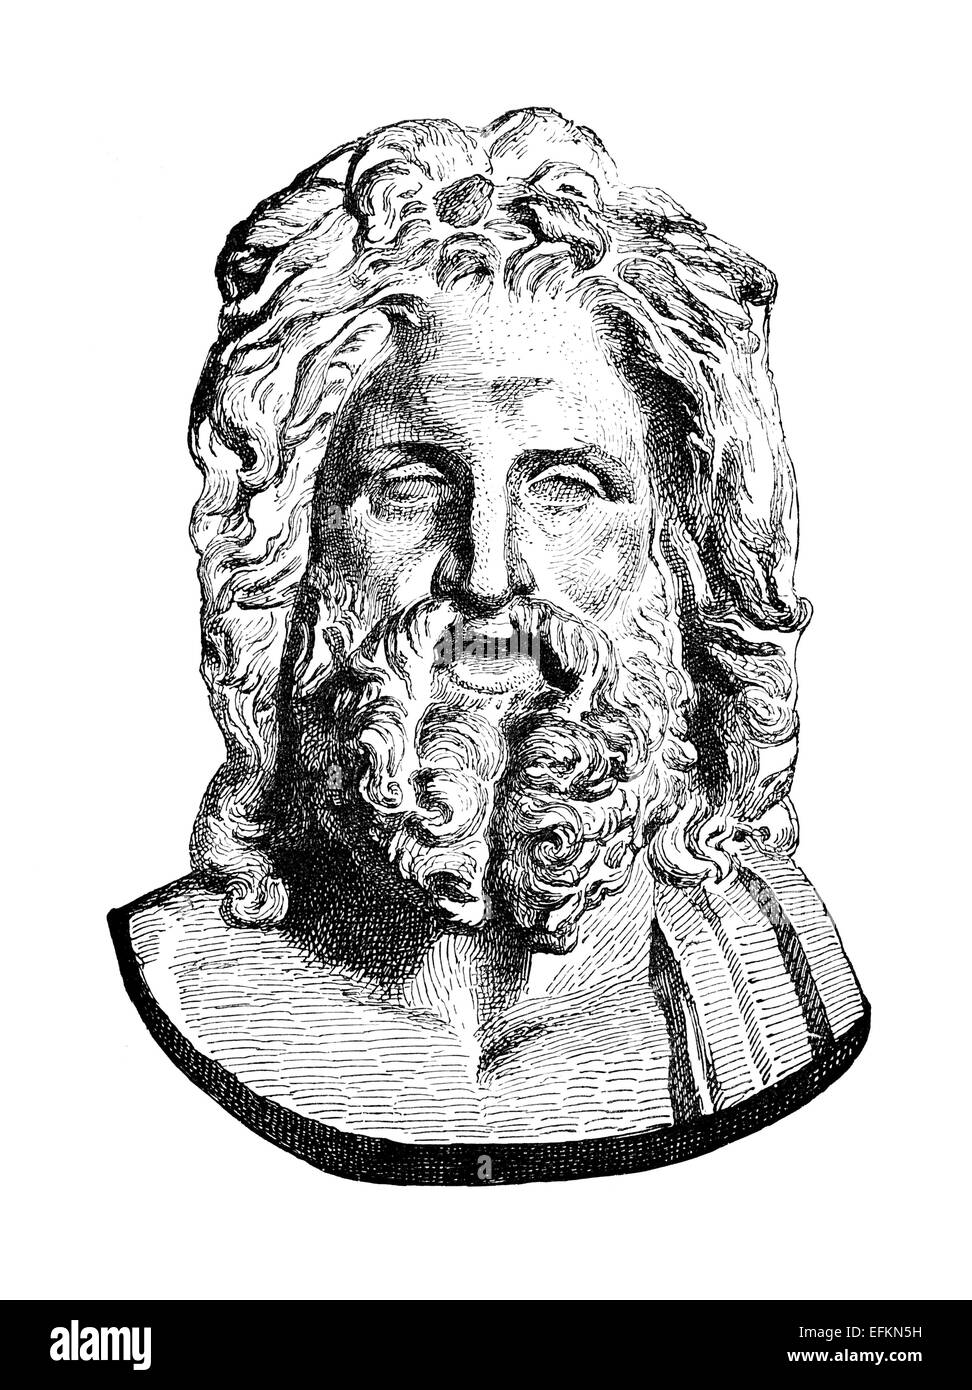 La gravure de l'époque victorienne d'un buste de Zeus. Image restaurée numériquement à partir d'un milieu du xixe siècle l'encyclopédie. Banque D'Images